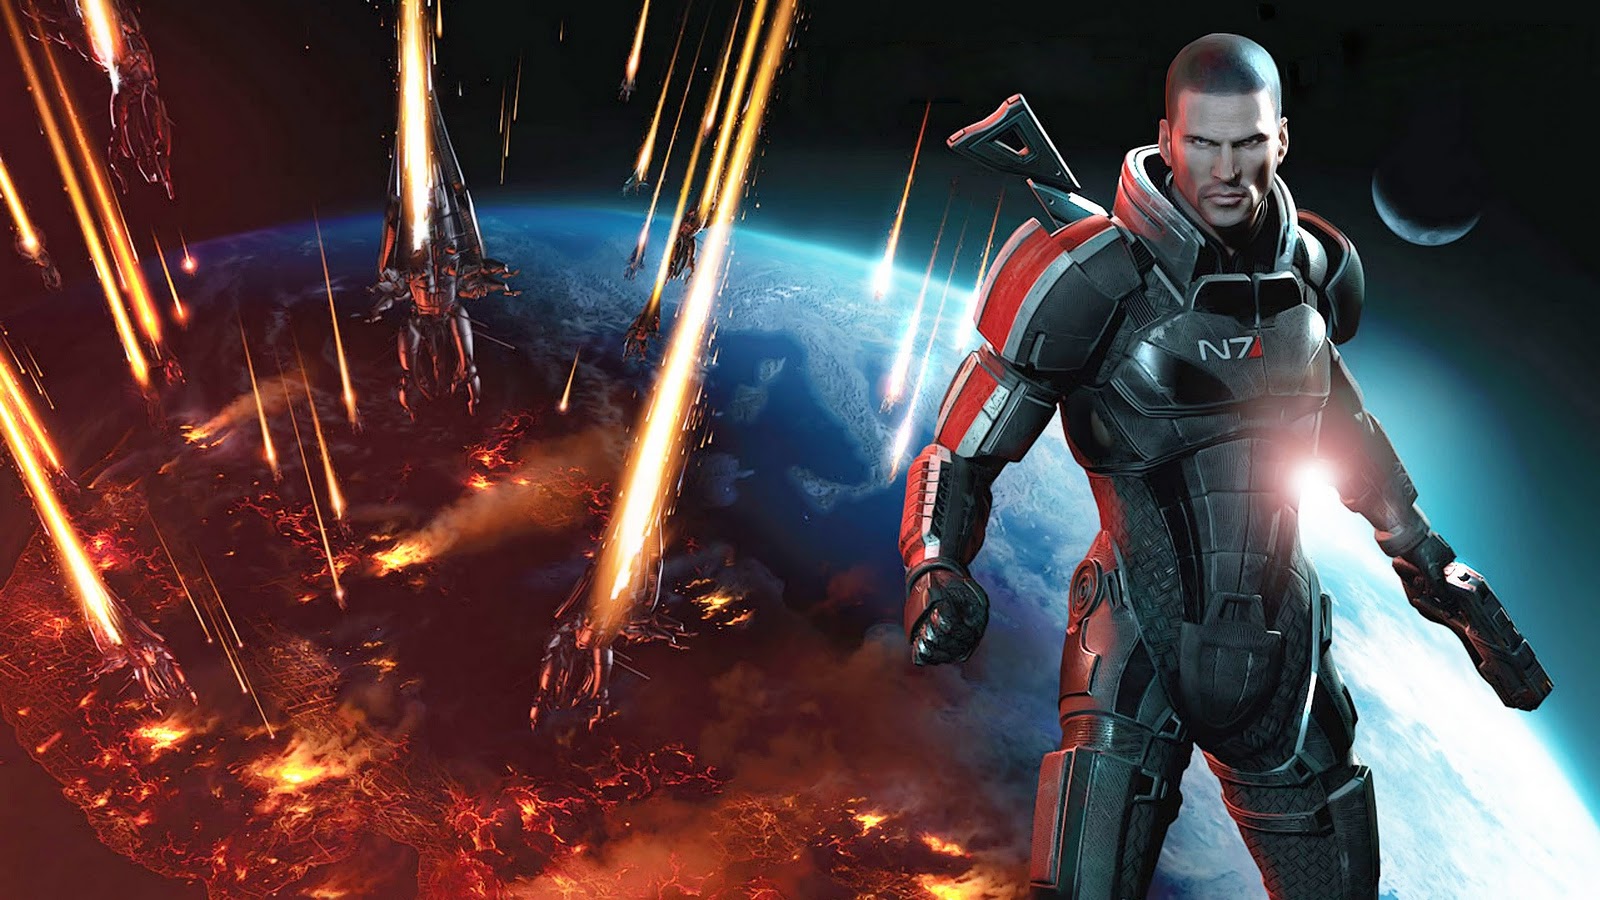 Wallpaper Photo Art Mass Effect HD Game